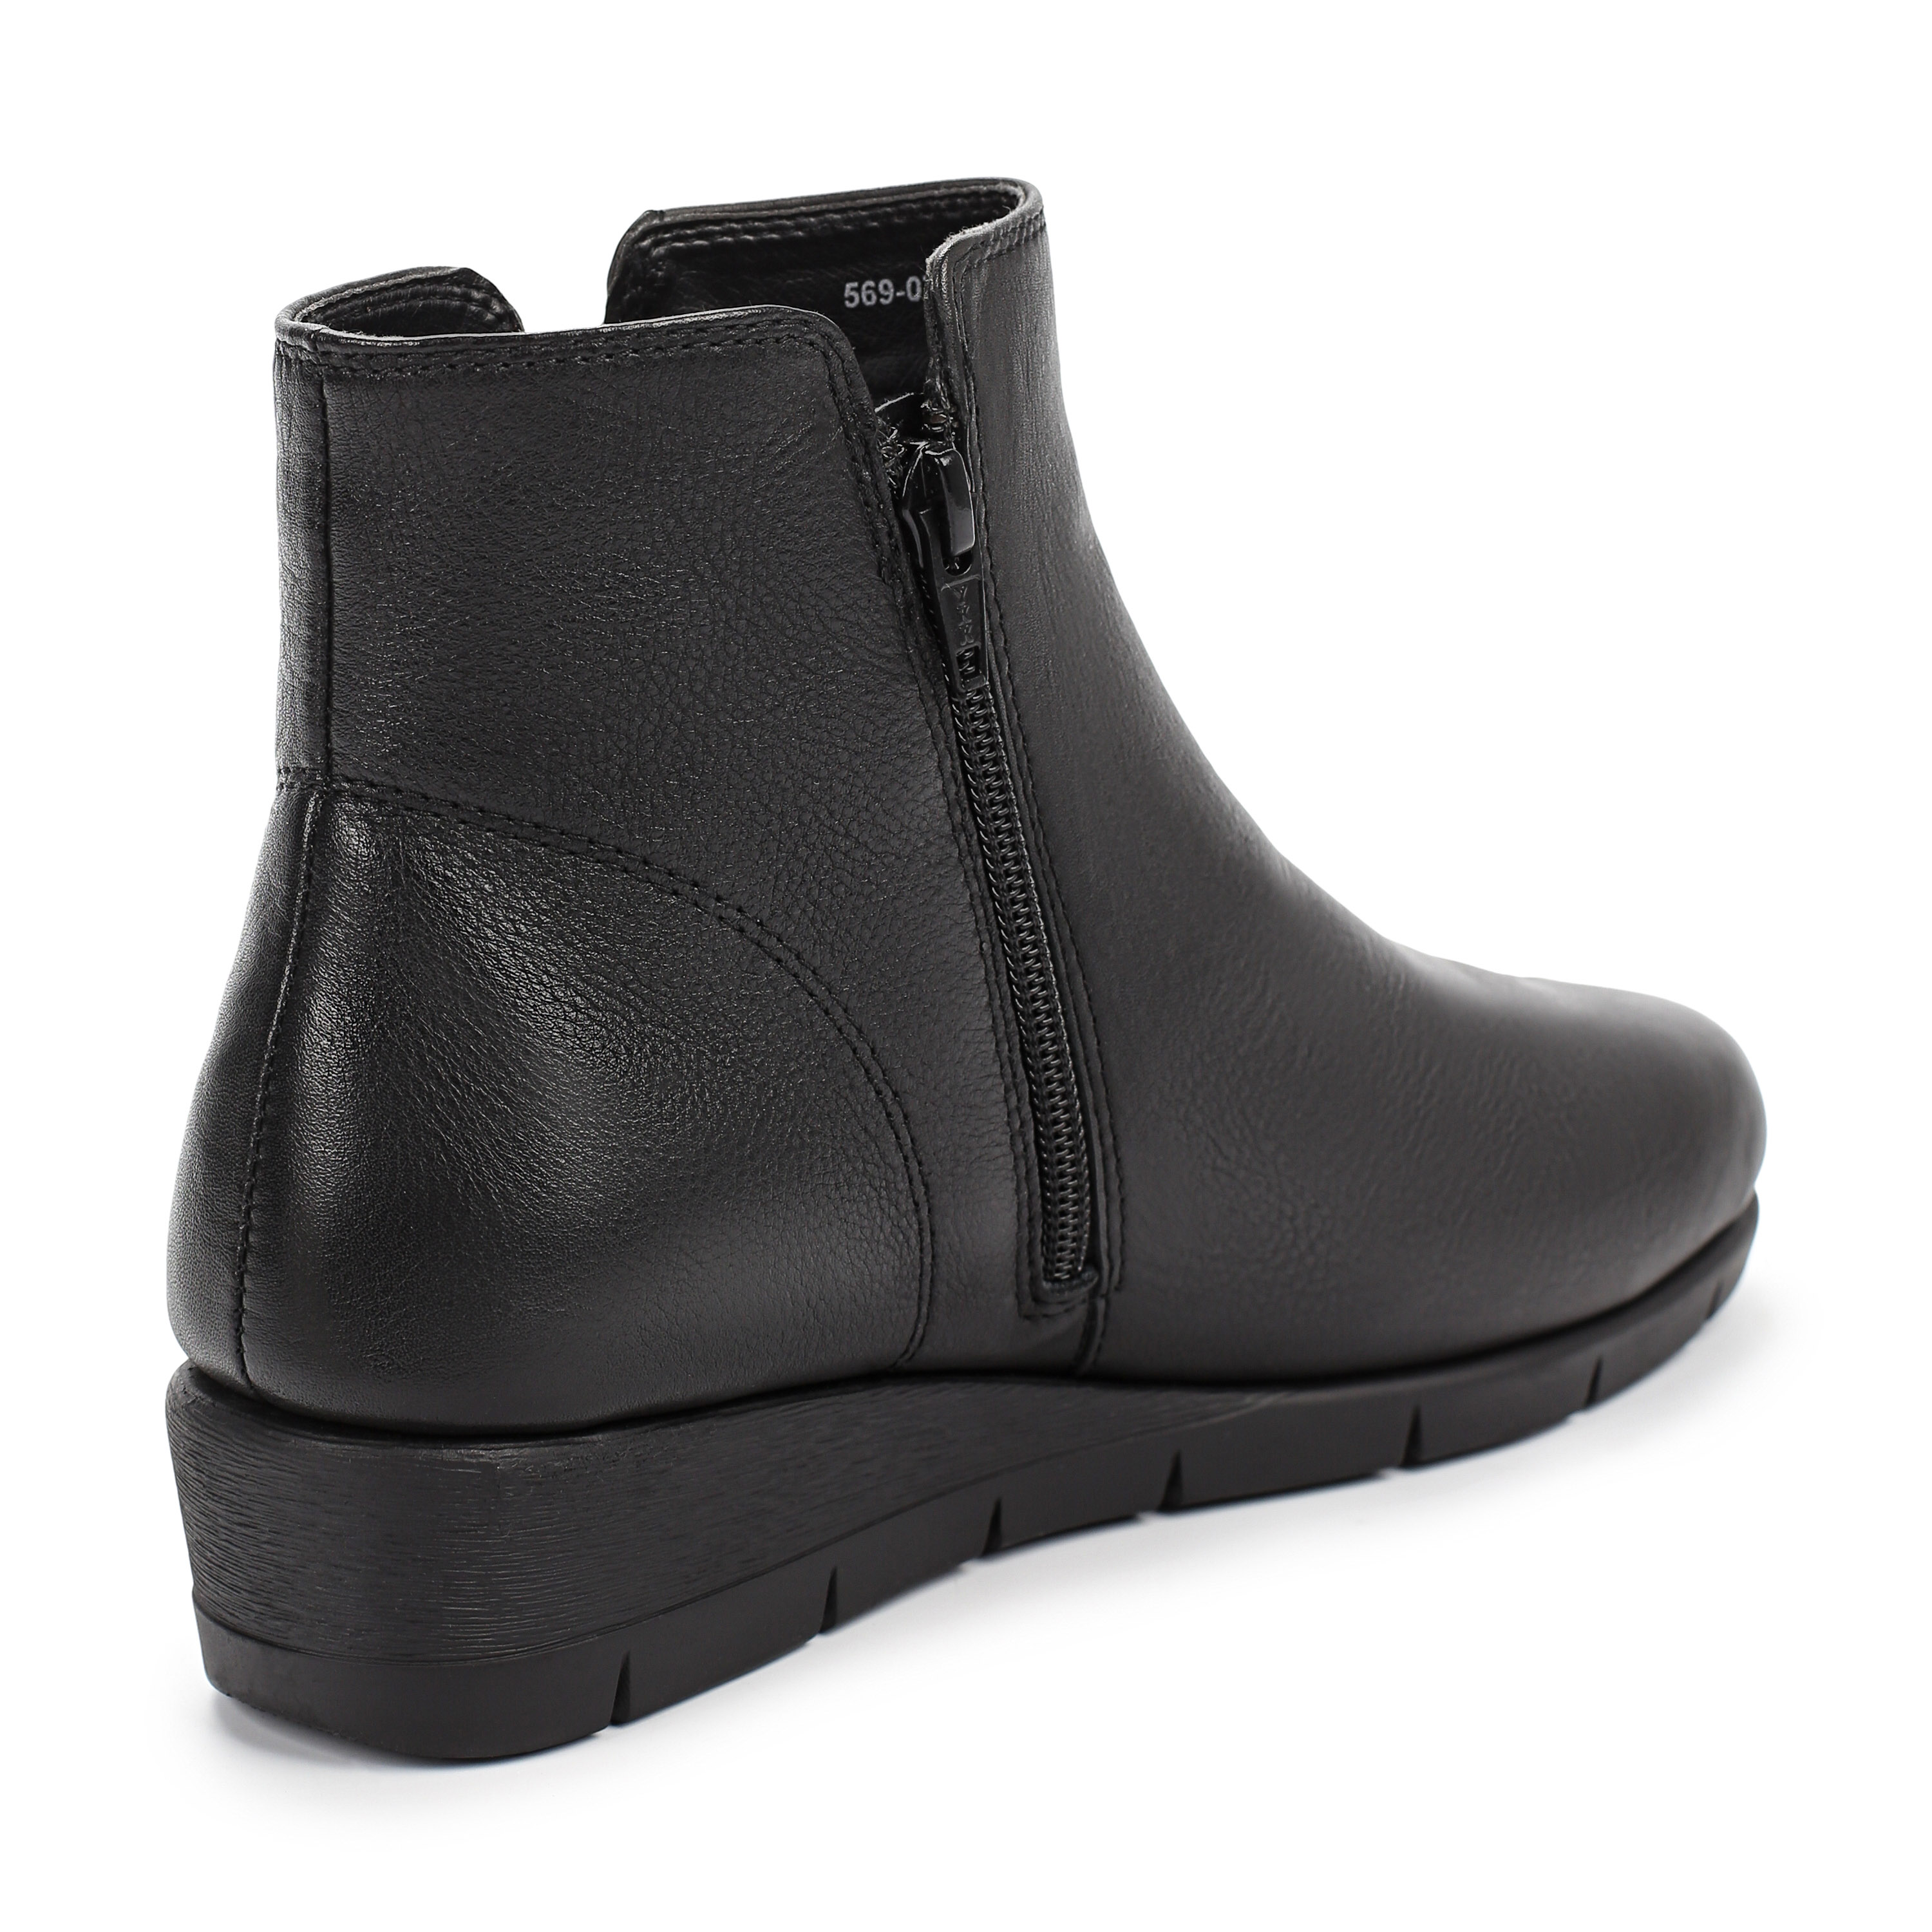 Ботинки Munz Shoes 569-070A-2102, цвет черный, размер 36 - фото 3